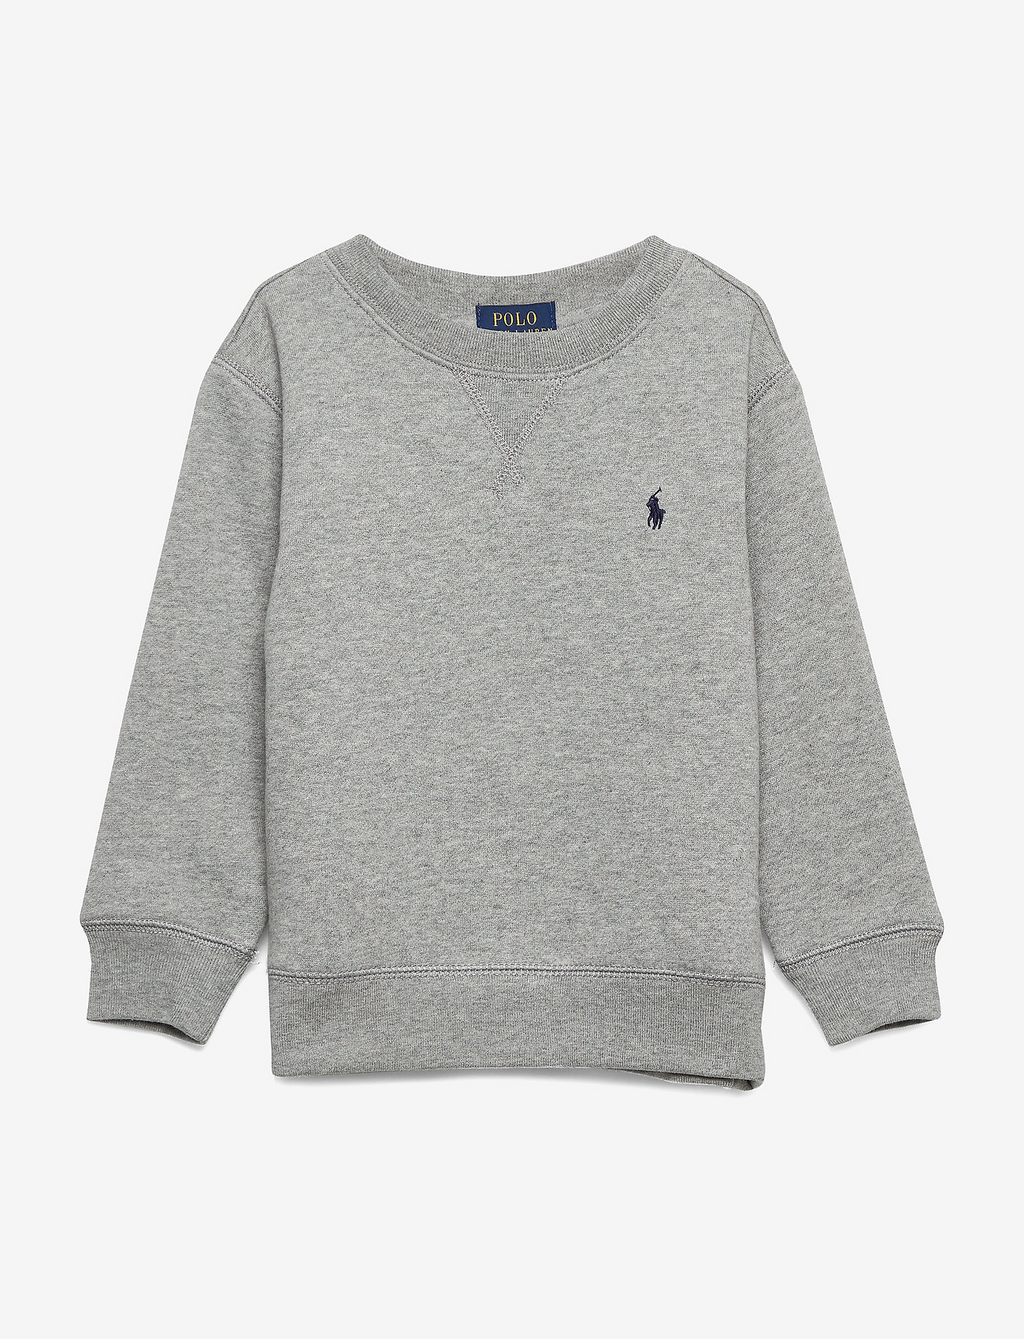 Ralph Lauren Sweatshirt Grey